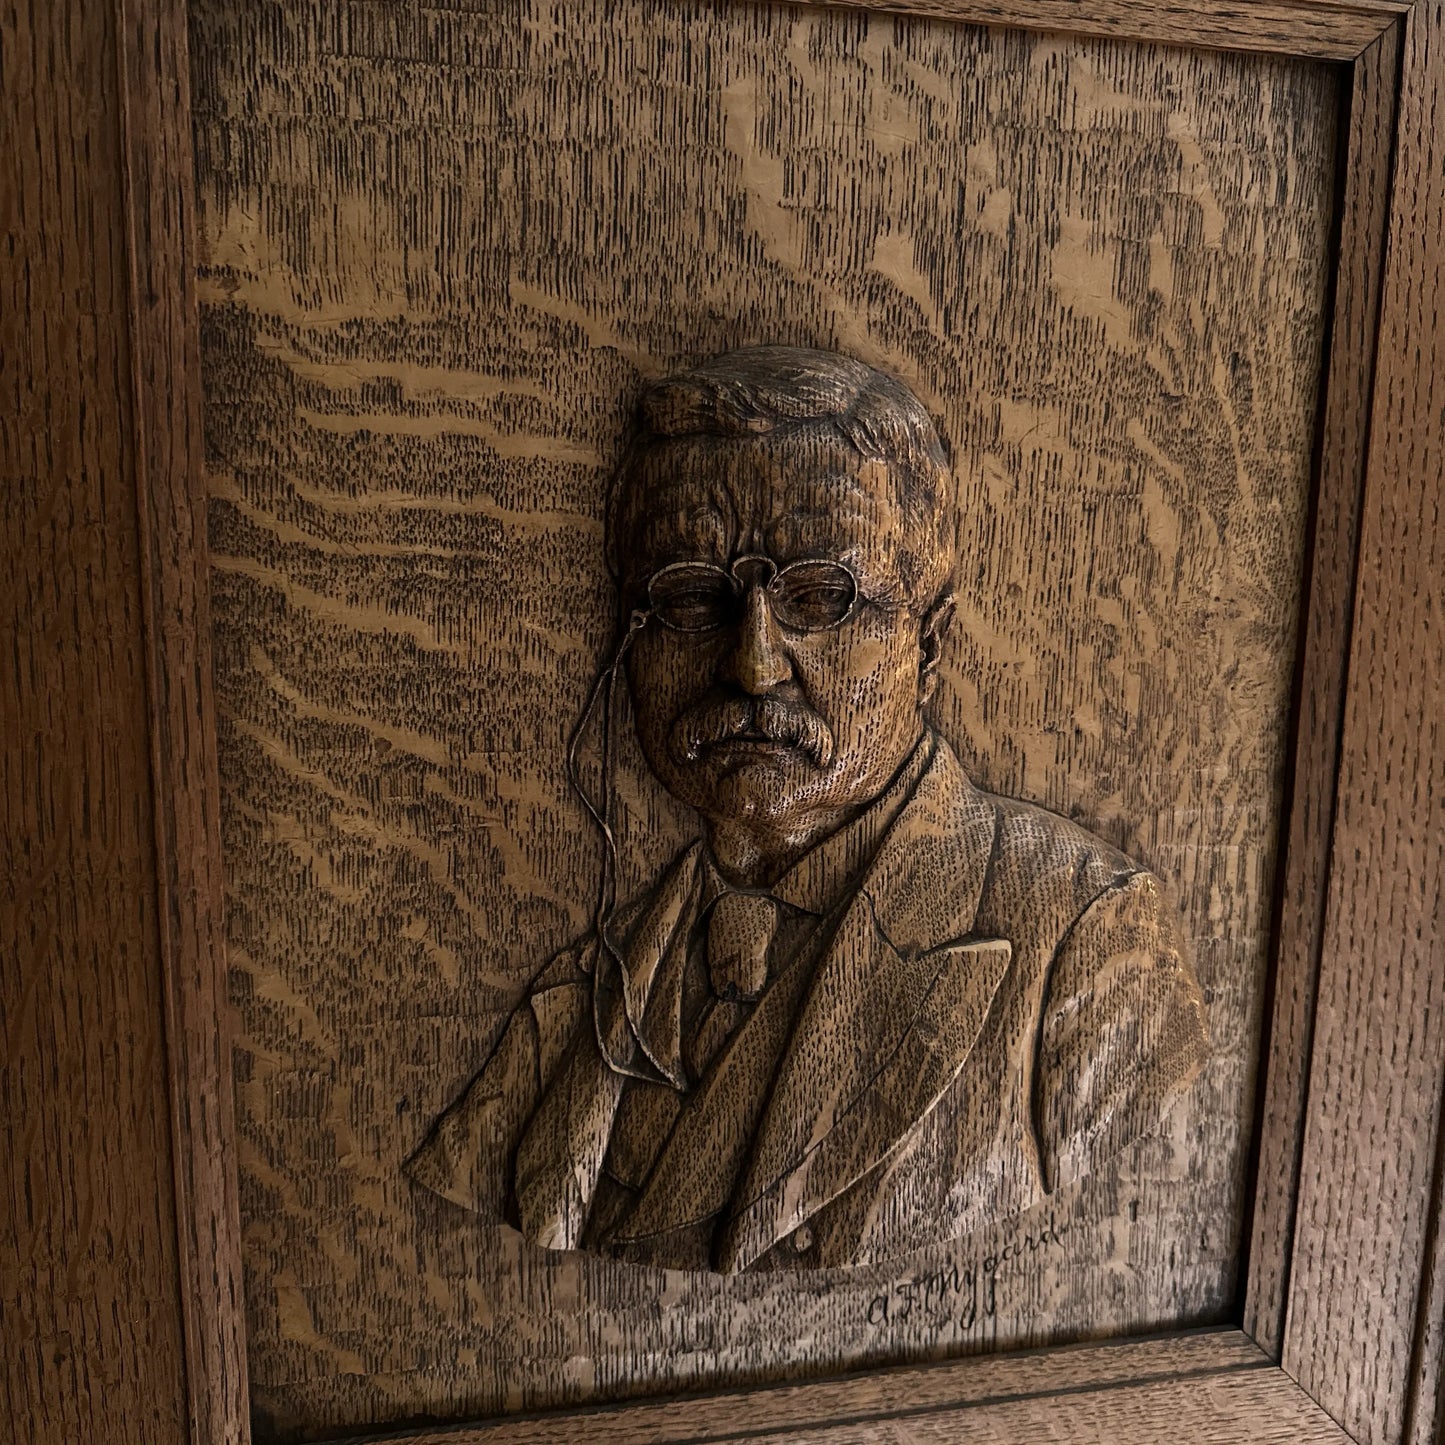 Teddy Roosevelt Relief Portrait c. 1910